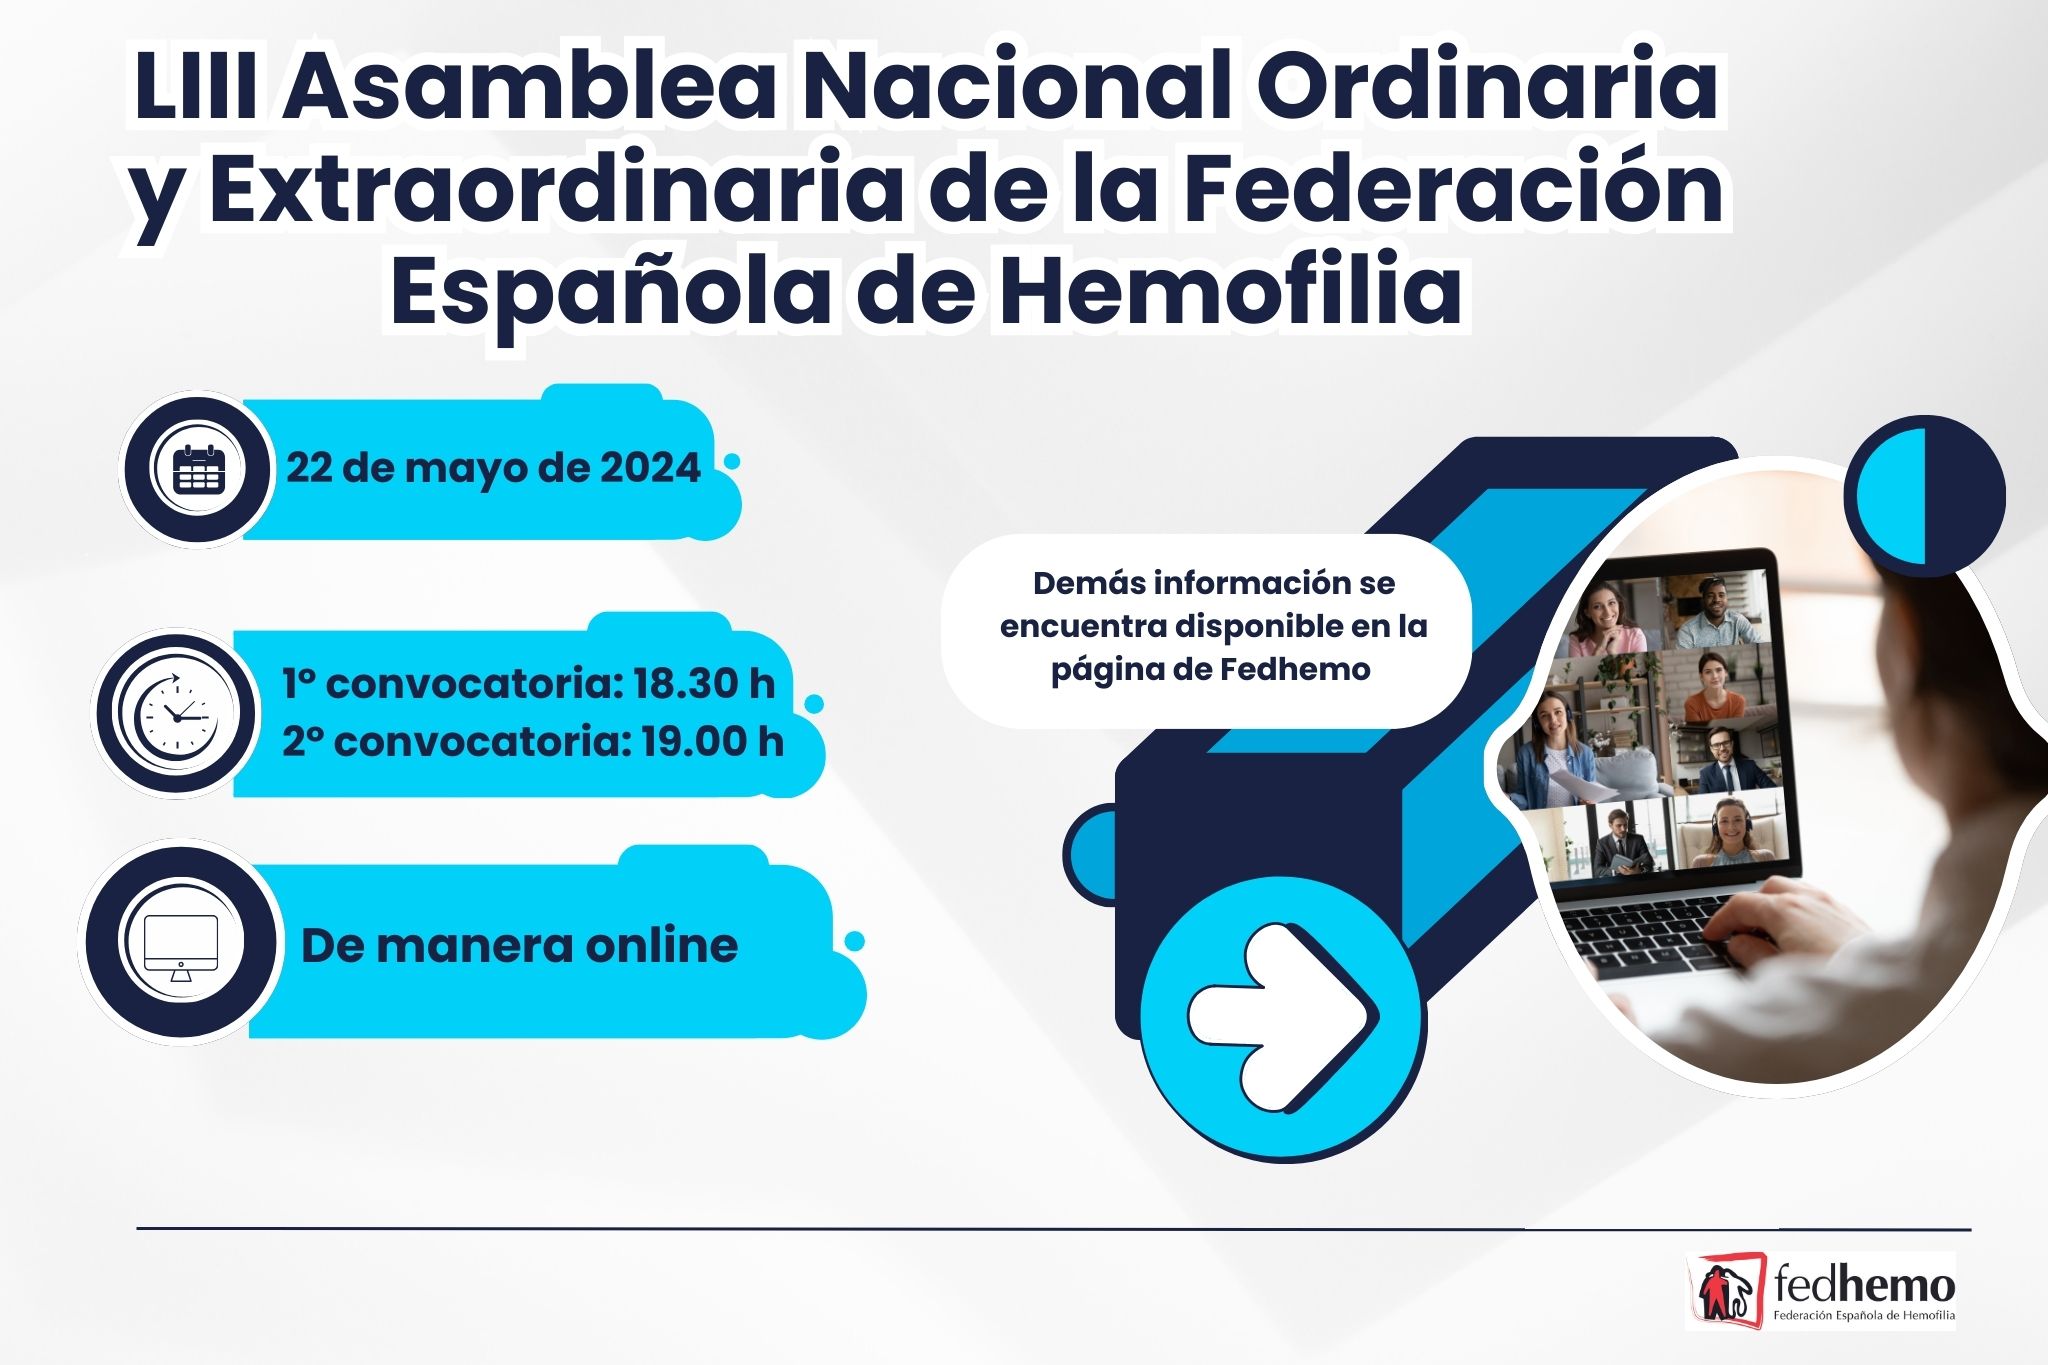 La LIII Asamblea Nacional de la Federación Española de Hemofilia rompe barreras: ¡Se llevará a cabo virtualmente el 22 de mayo!